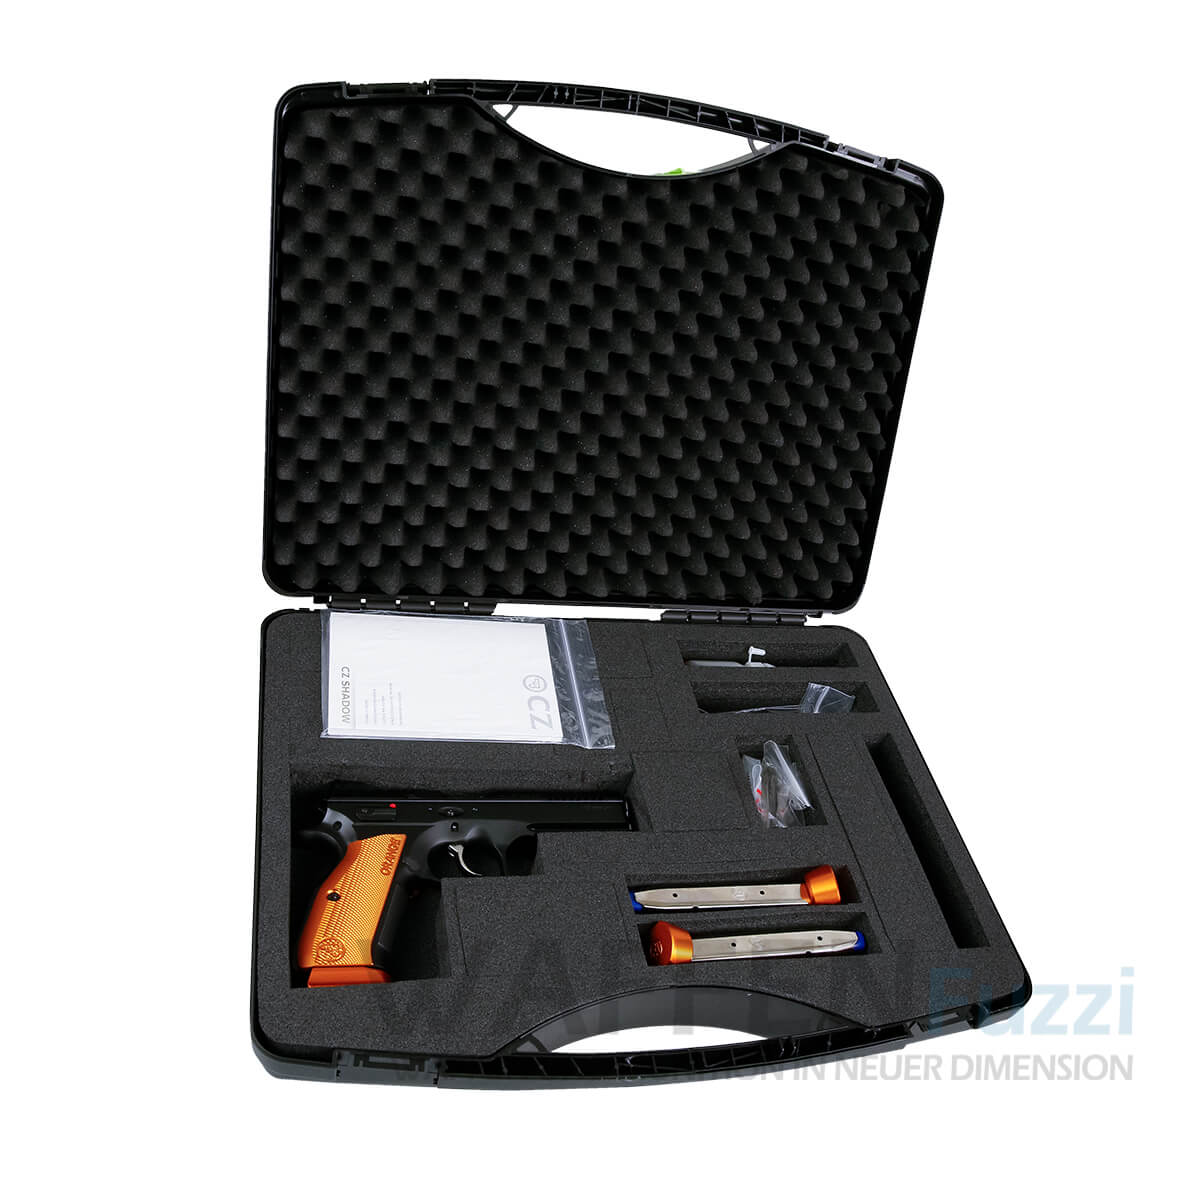 Pistole CZ Shadow 2 Orange Kaliber 9mm Luger mit Zubehör und Koffer 